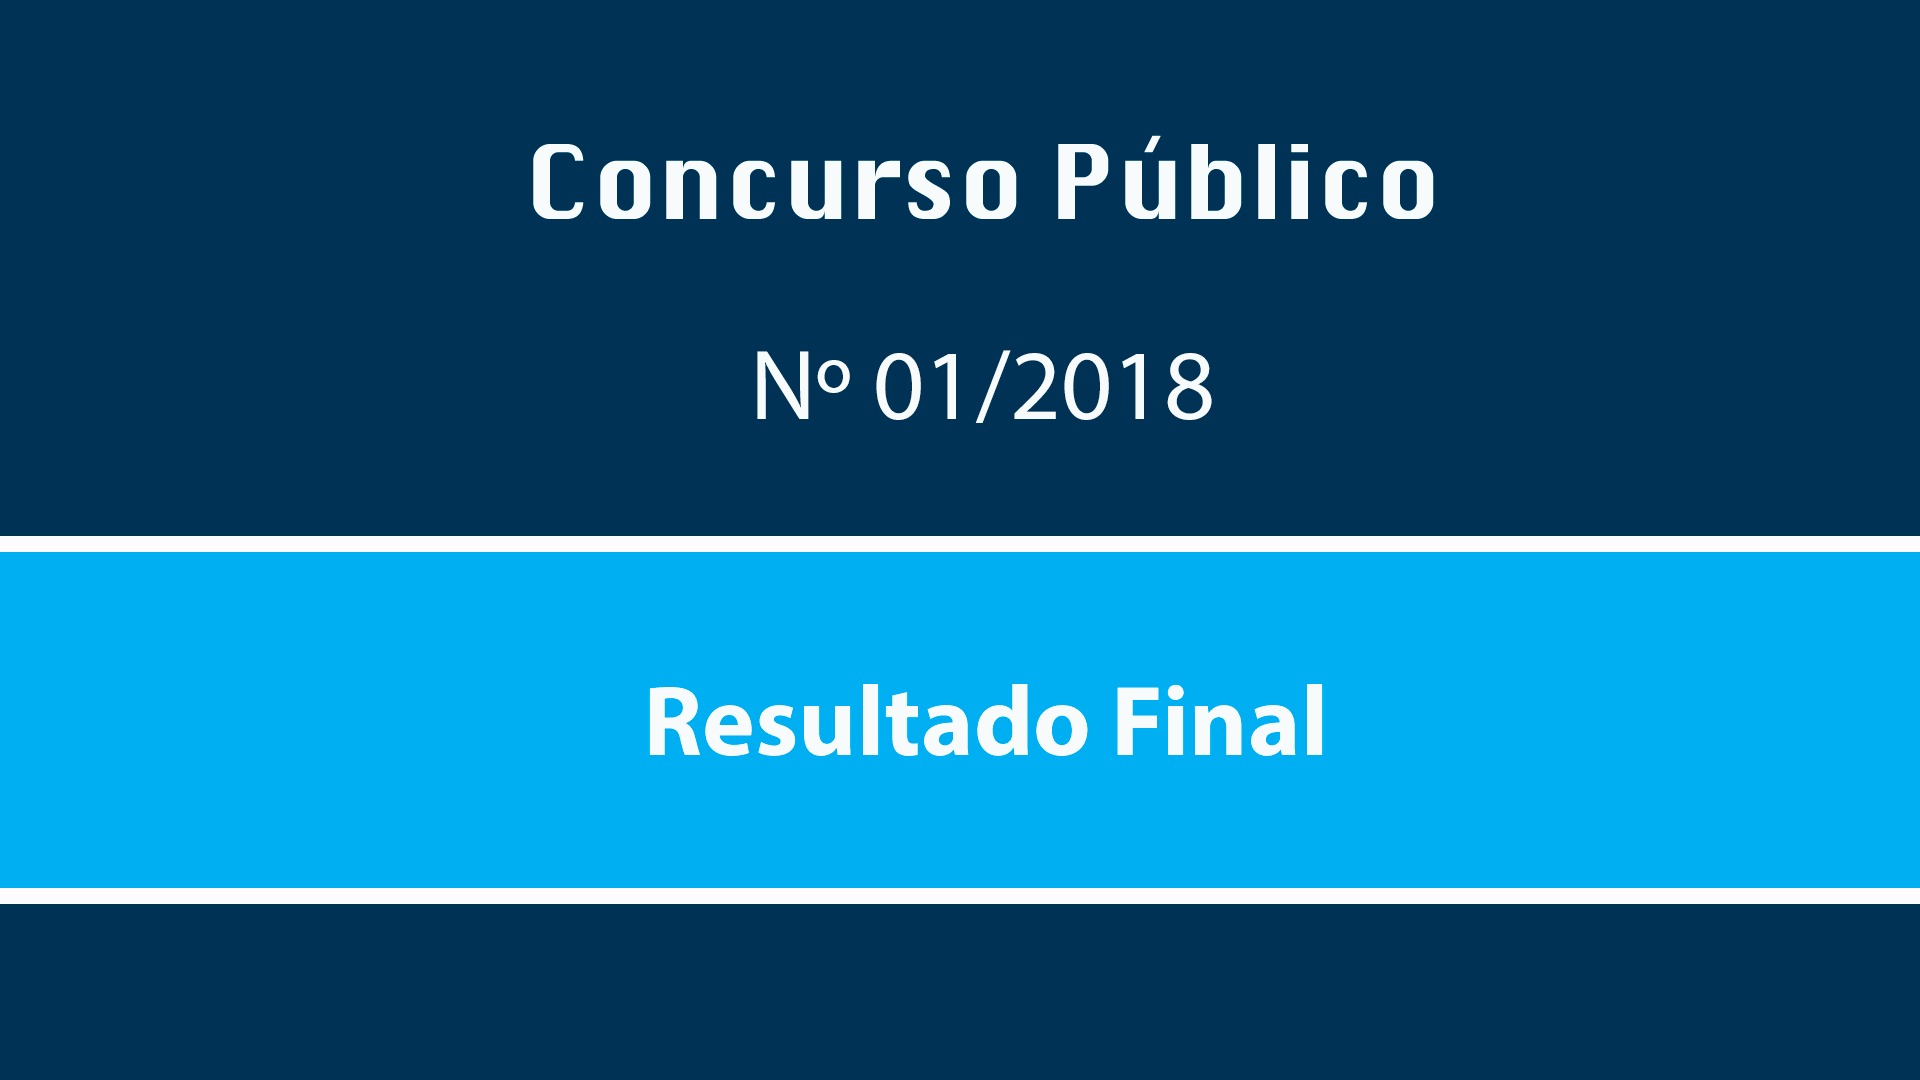 CONCURSO PÚBLICO Nº 01/2018 - RESULTADO FINAL